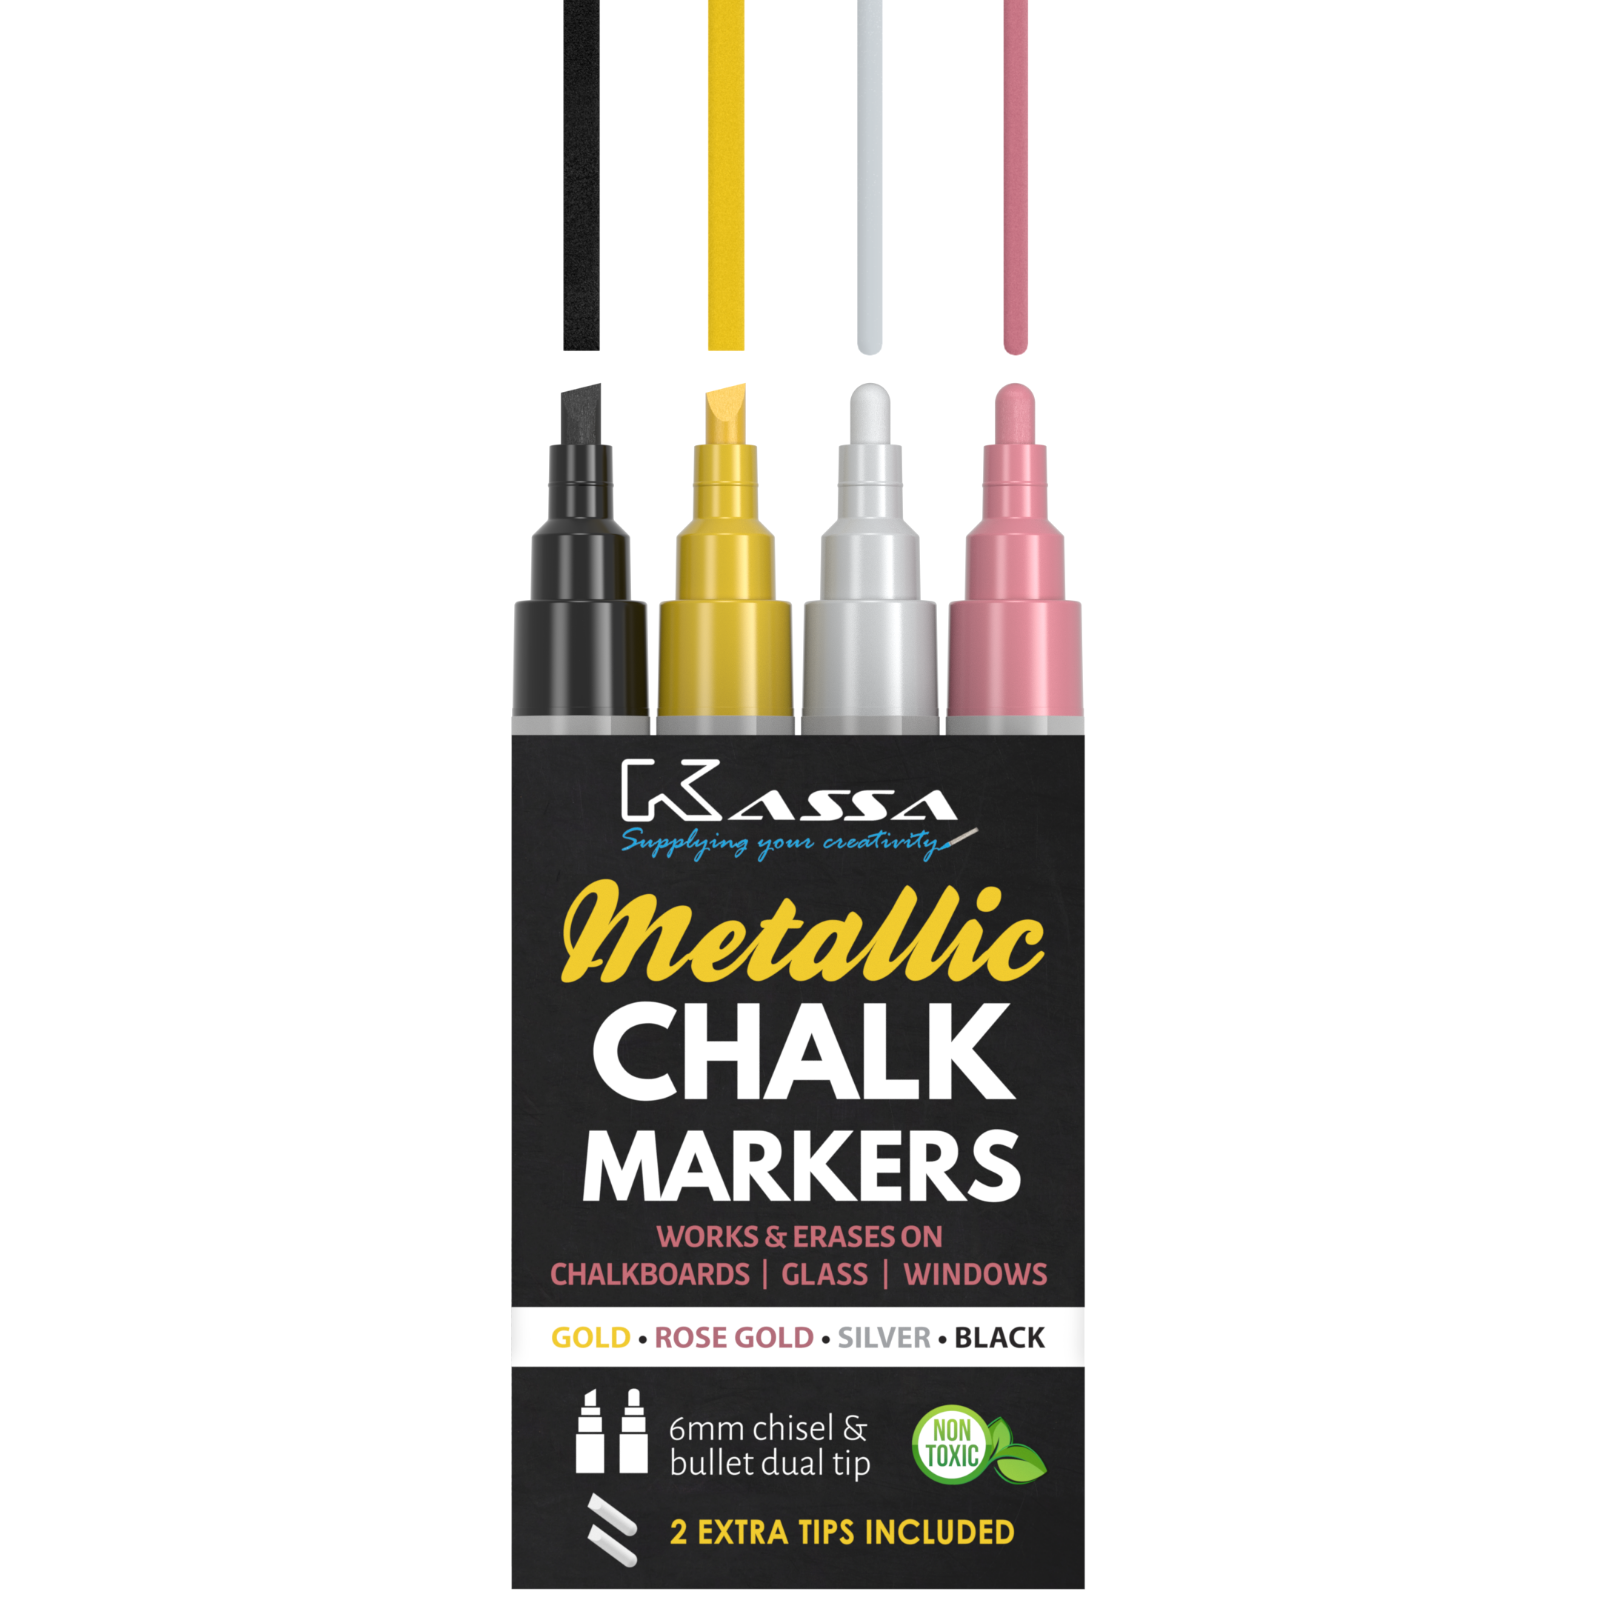 Kassa Metallic Chalk Markers (gold, Rose Gold, Black & Silver) Chalkboard Pen